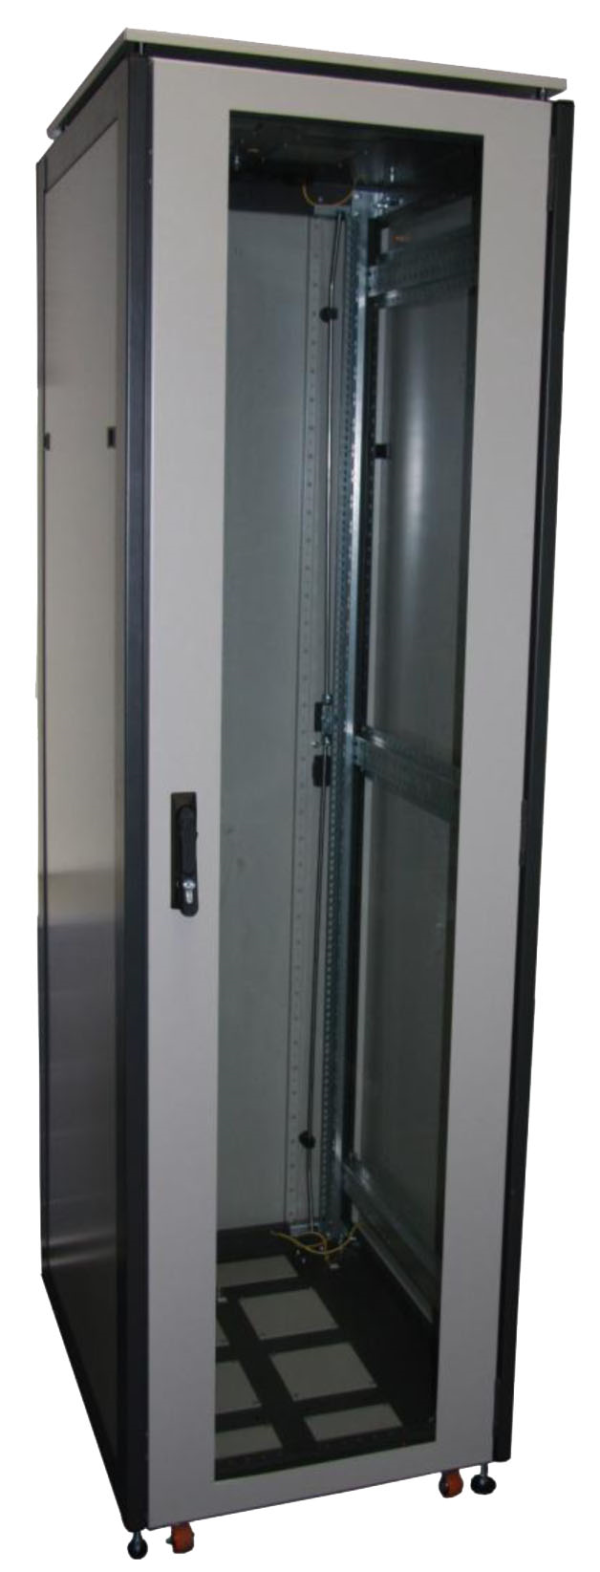 ССКТБ ТОМАСС ШТК-6820Э-00 - шкаф телекоммуникационный 19", 42U, 600х800х2000 мм, с металлической и стеклянной дверью